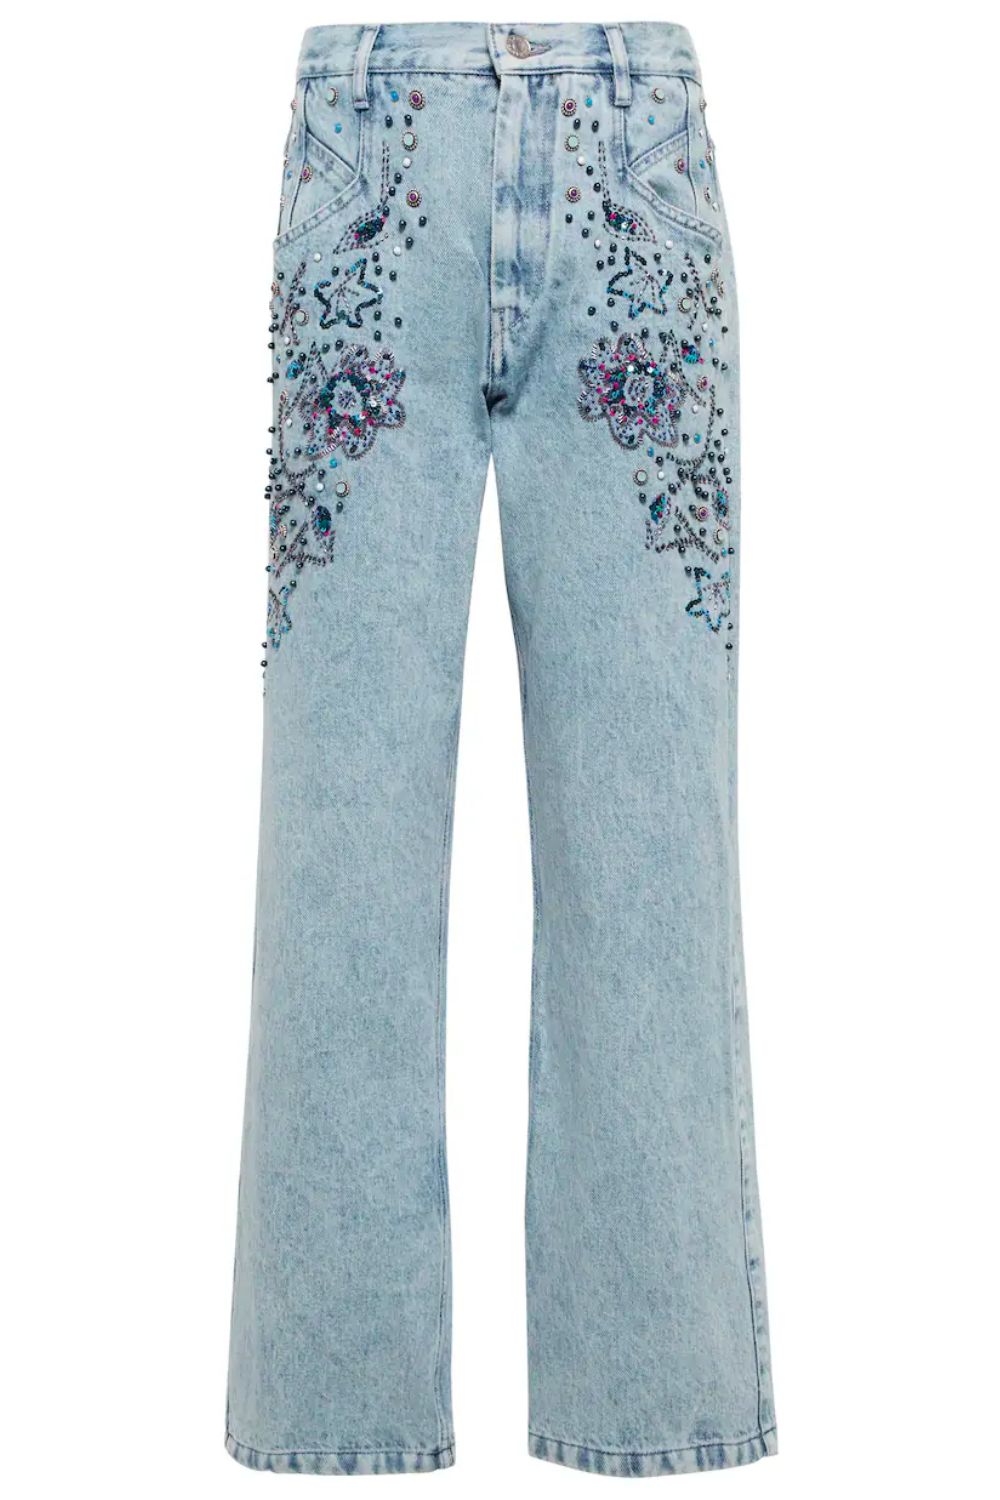 Isabel-Marant-Embellished-Jeans